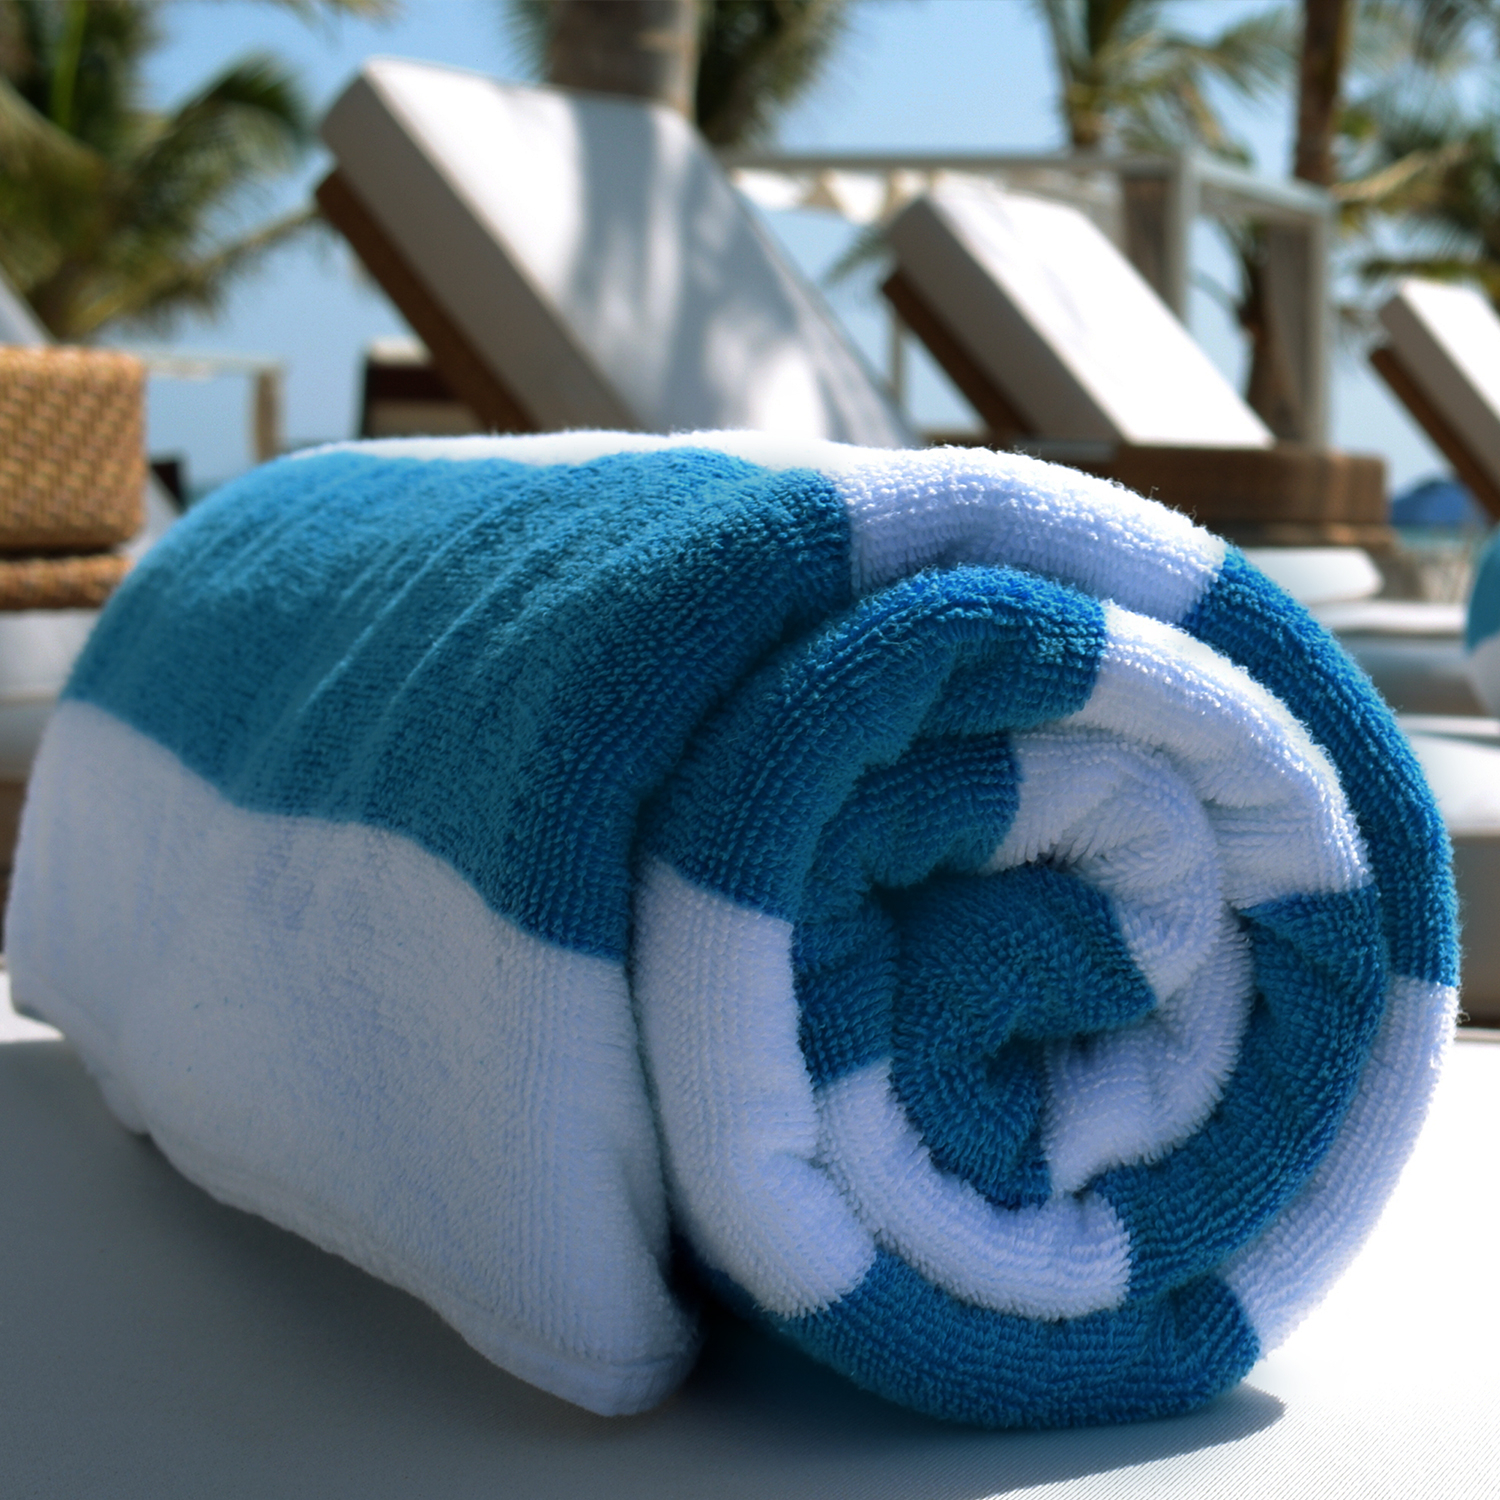 Esplanade Beach Towel Features